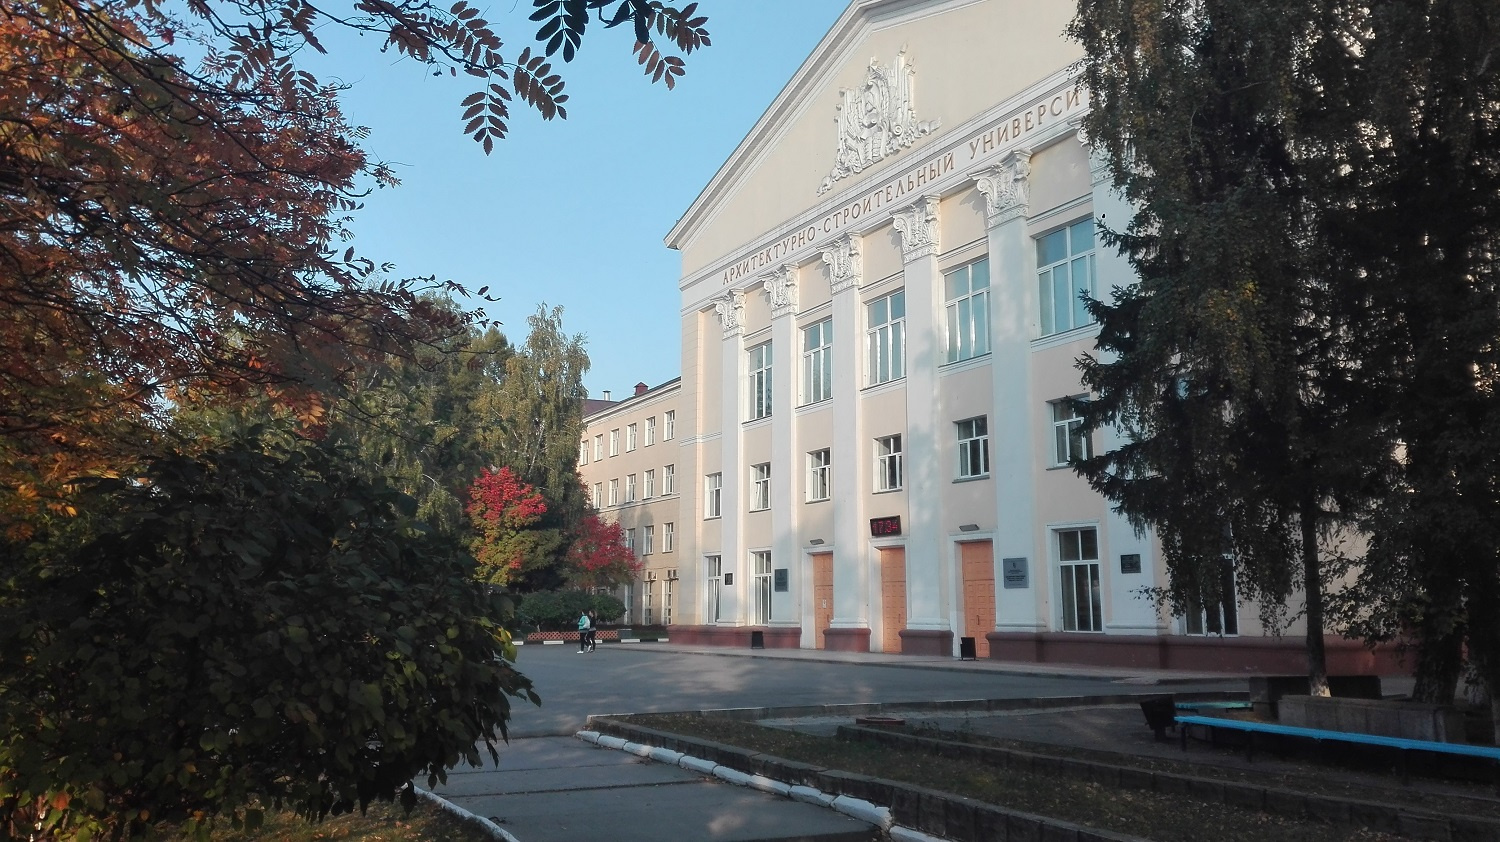 Сайт строительного университета нижний. Архитектурно-строительный университет Новосибирск. Новосибирский архитектурно-строительный университет Сибстрин НГАСУ. Сибстрин главный корпус.